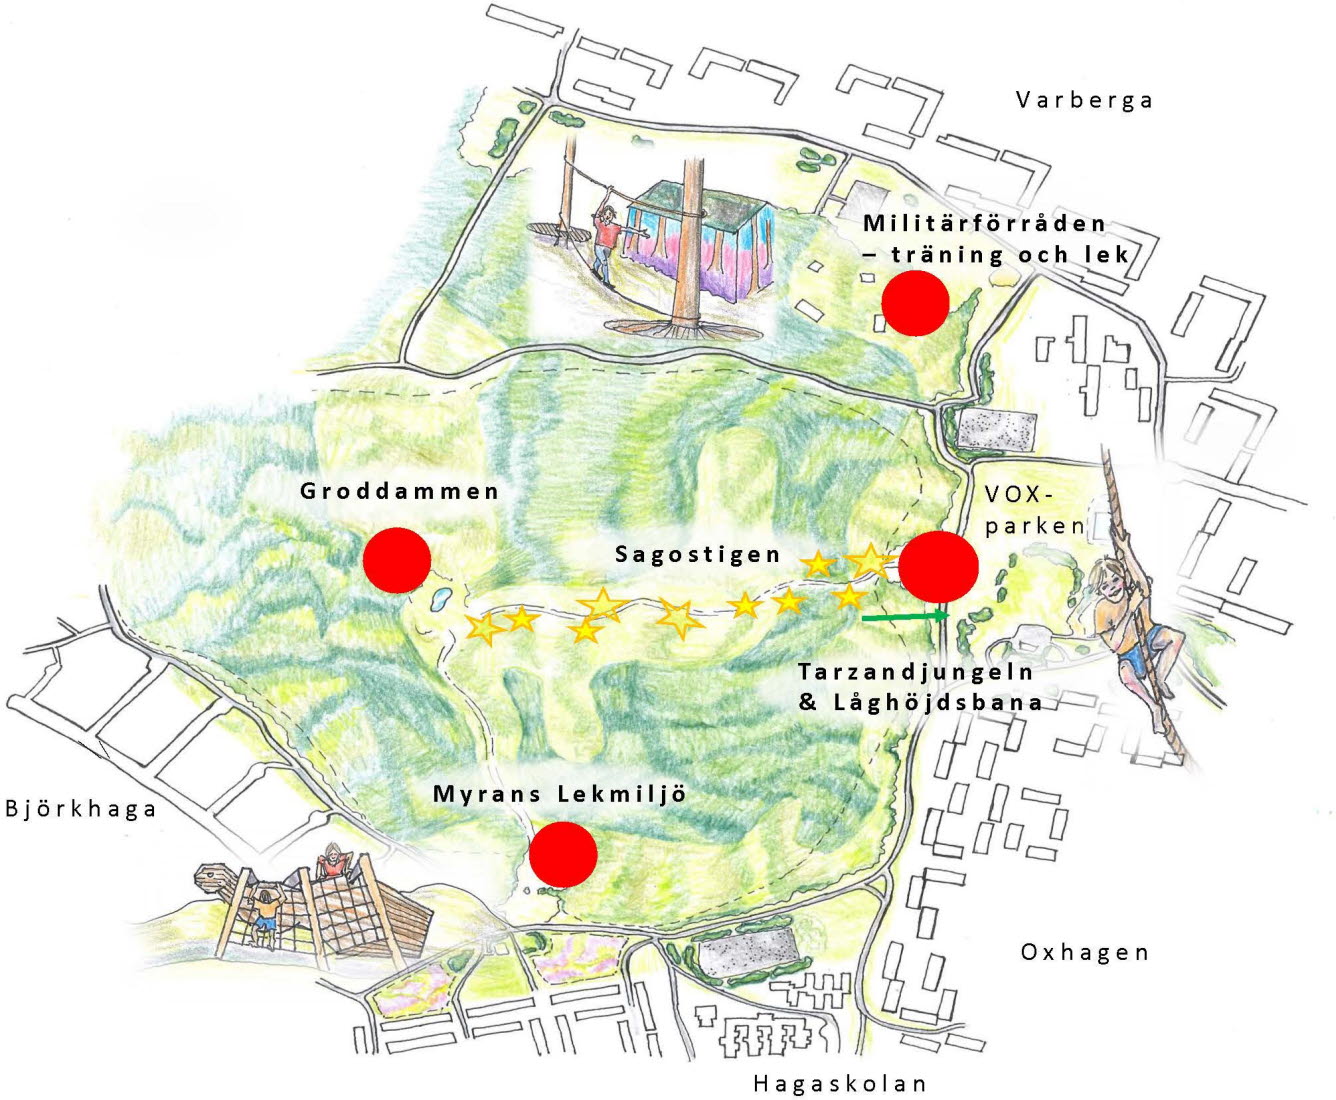 Karta över Varbergaskogen där de olika lekattraktionerna är utmärkta.